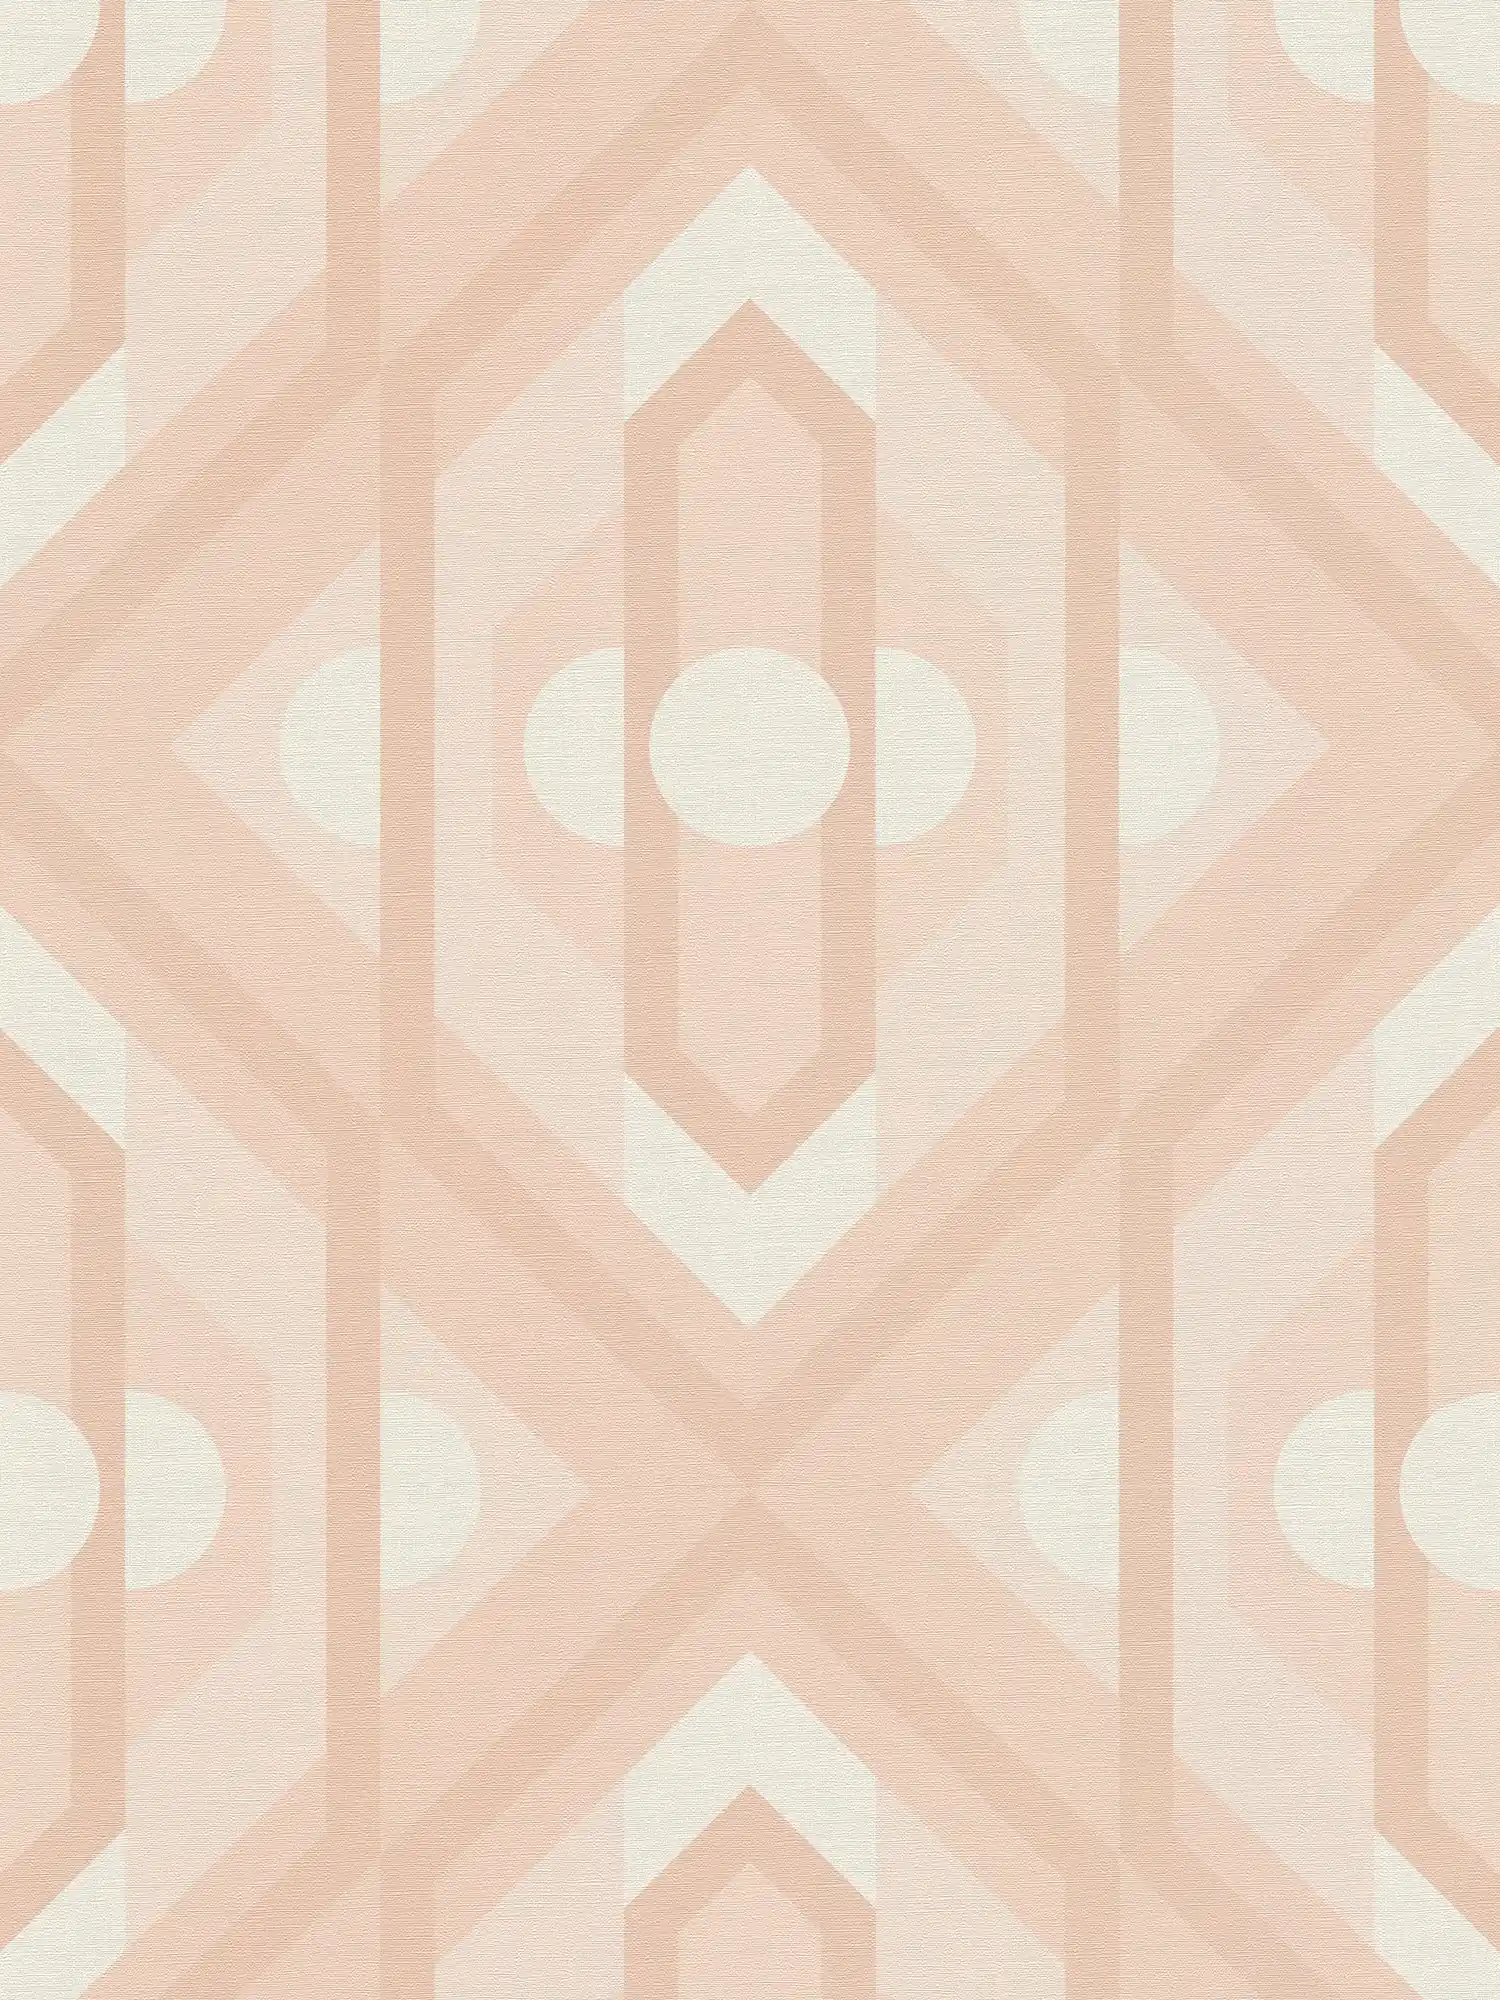 Retro behang met geometrische ornamenten in zachte kleuren - beige, crème, wit
